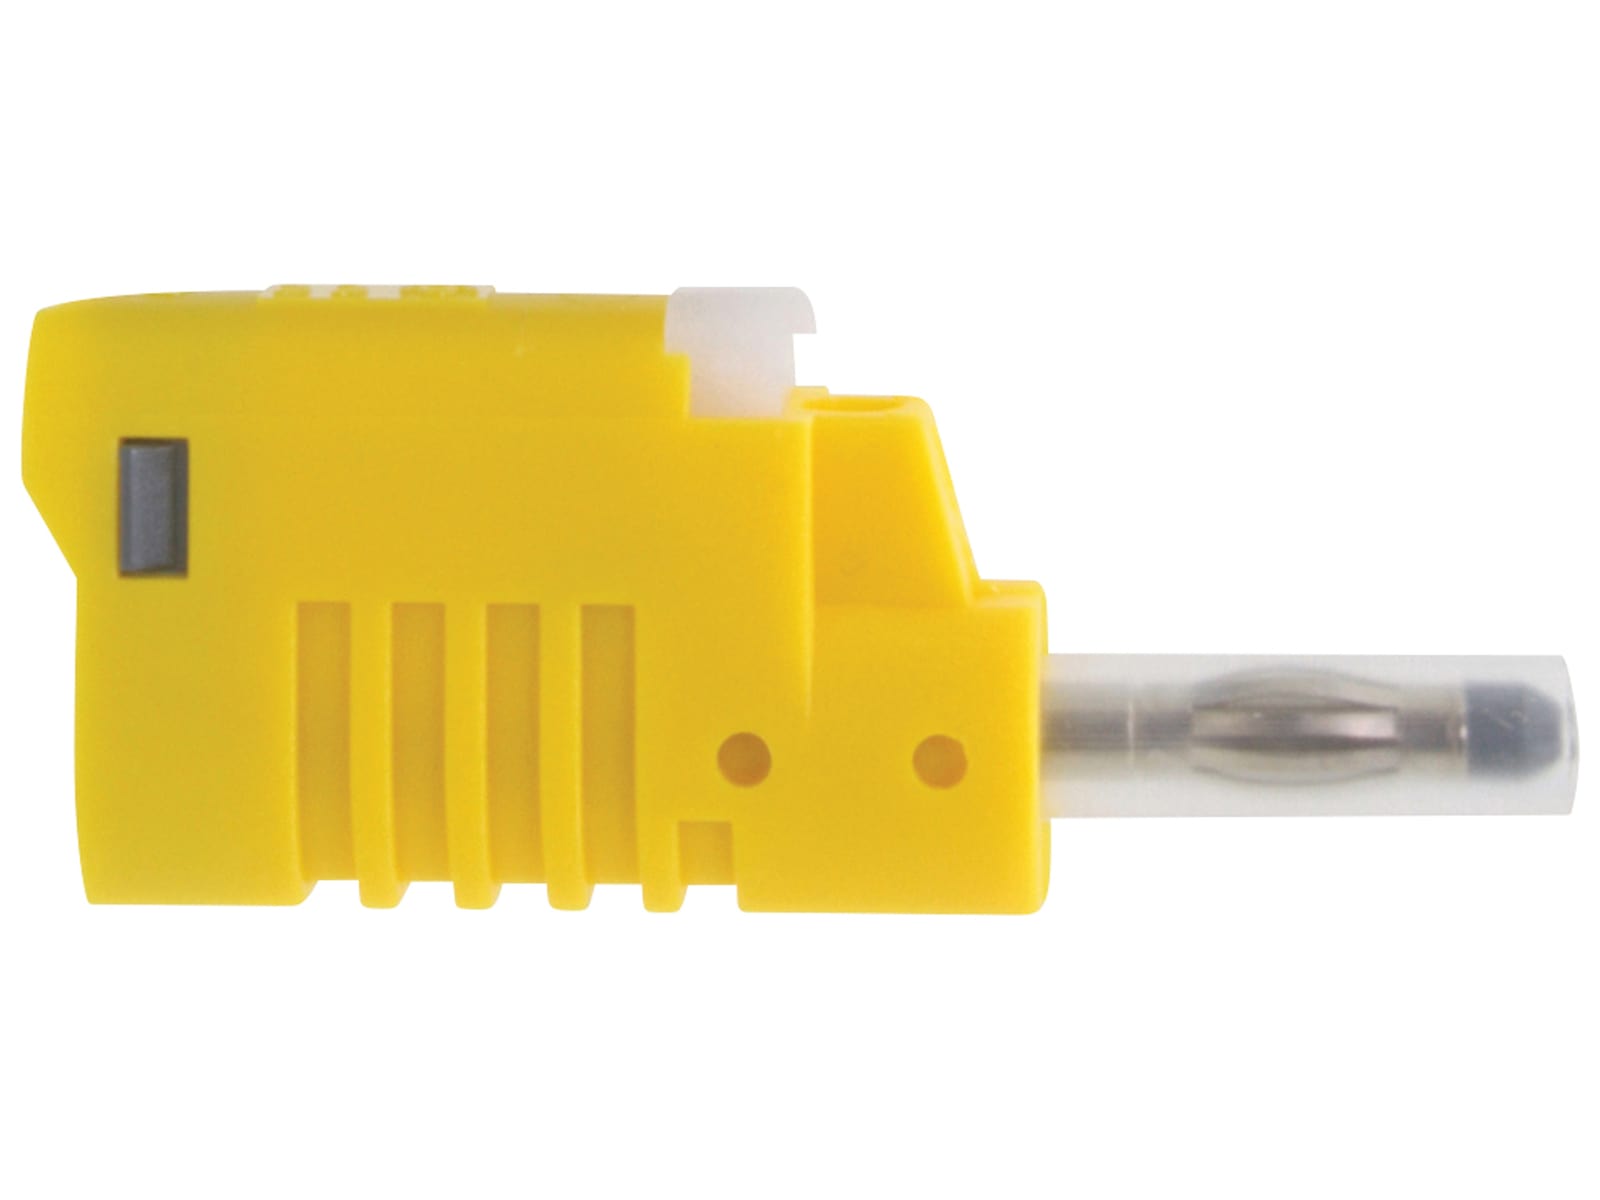 DONAU ELEKTRONIK Sicherheits-Laborstecker, 4 mm, gelb, 1083 von Donau Elektronik